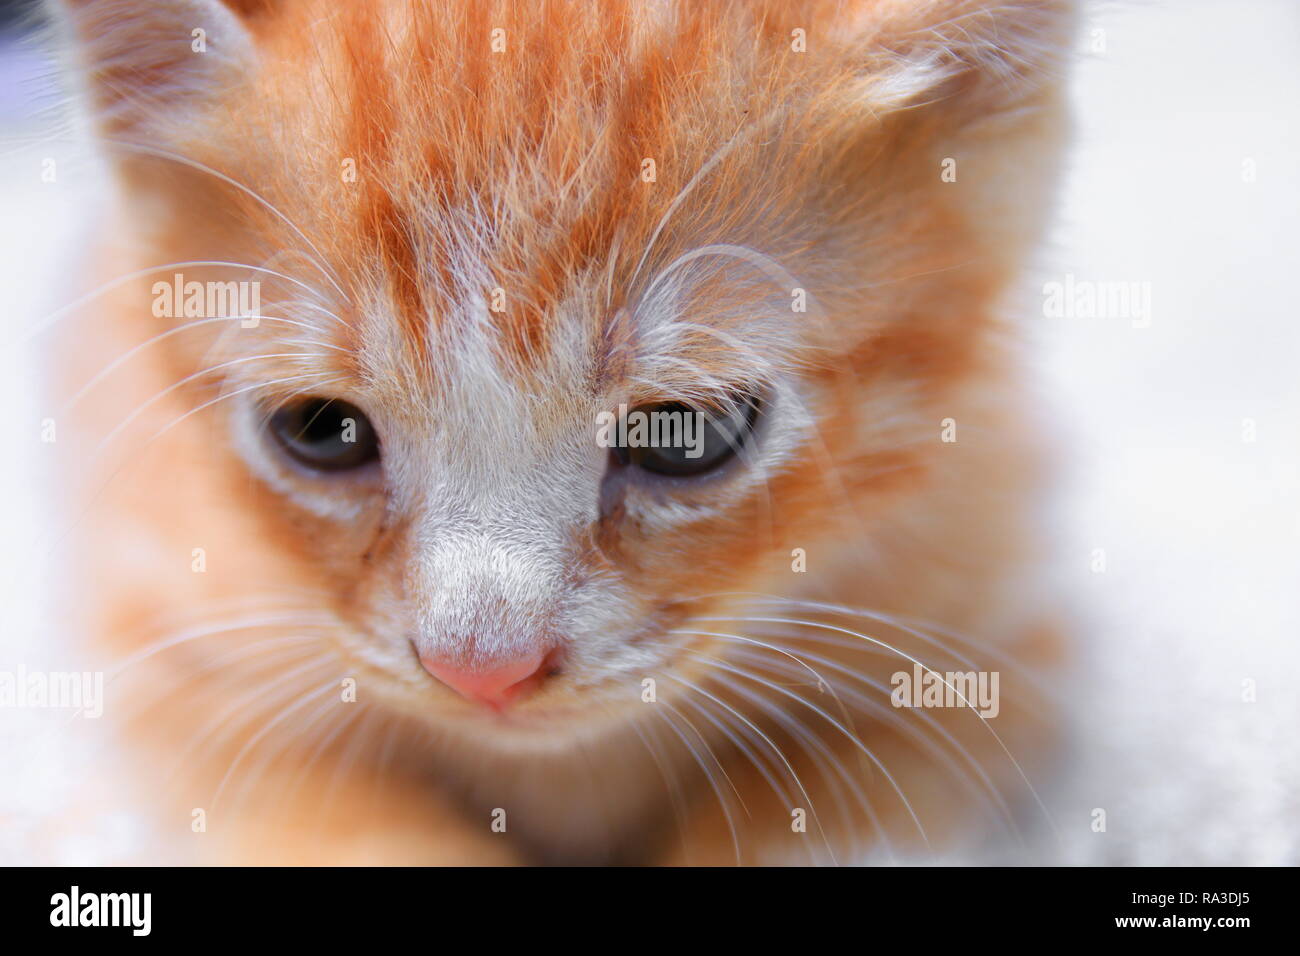 Ritratto di gattino arancione-rosso, piccolo gatto carino selezionare la messa a fuoco con profondità di campo ridotta. Foto Stock